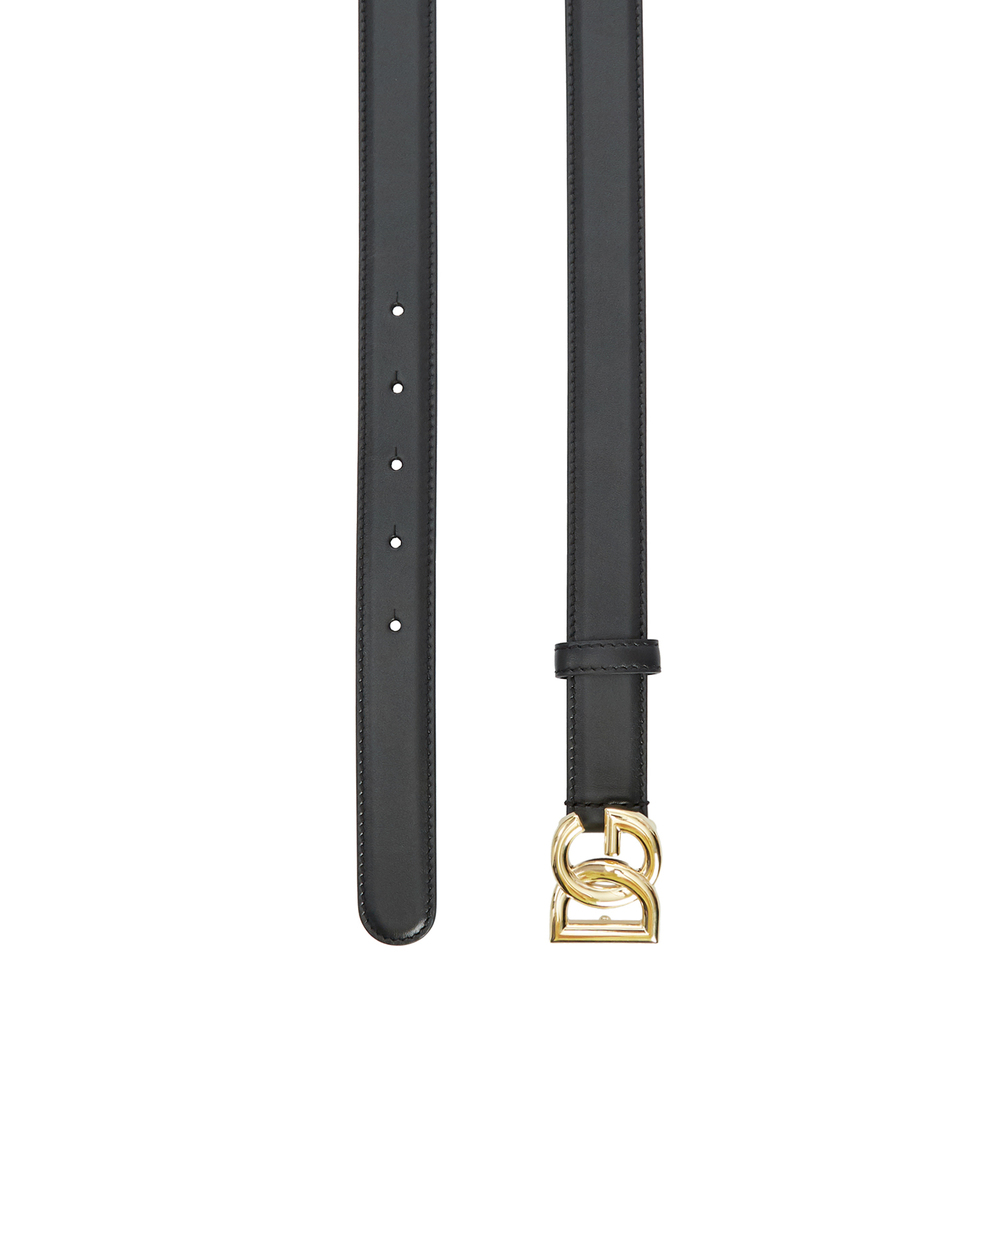 Кожаный ремень Dolce&Gabbana BE1447-AW070, черный цвет • Купить в интернет-магазине Kameron